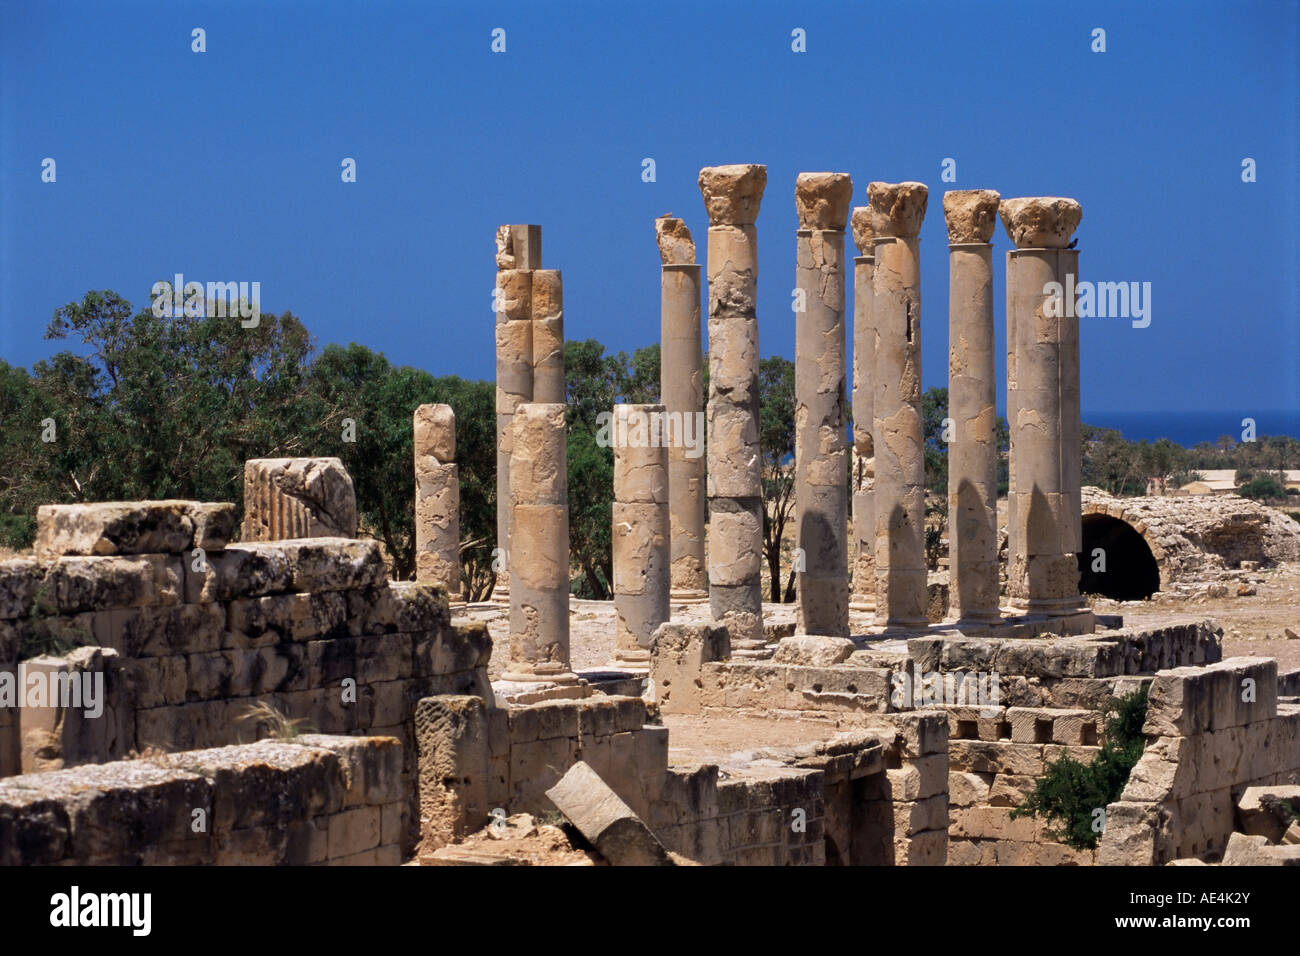 Les colonnes du palais, Tolemaide (Ptolémaïs), la Cyrénaïque, Libye, Afrique du Nord, Afrique Banque D'Images